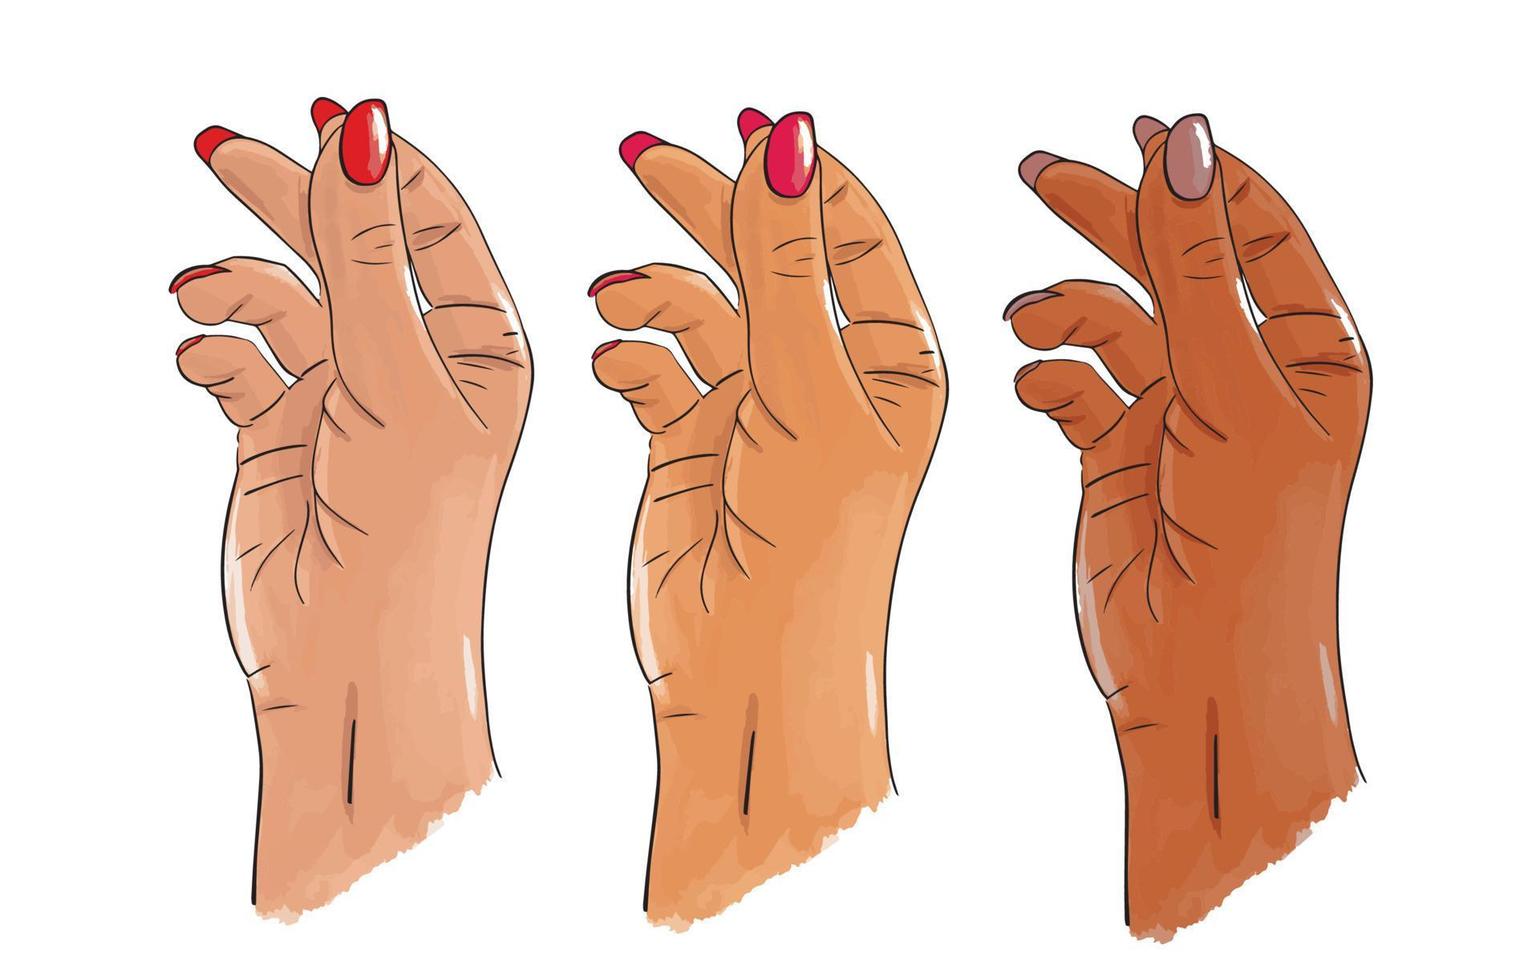 mani bianche, asiatiche e afroamericane. mano femminile disegnata a mano con unghie lunghe che schioccano il gesto del dito. adesivo, illustrazione stock vettoriale isolato su bianco. schizzo in stile pop art. richiamare l'attenzione.